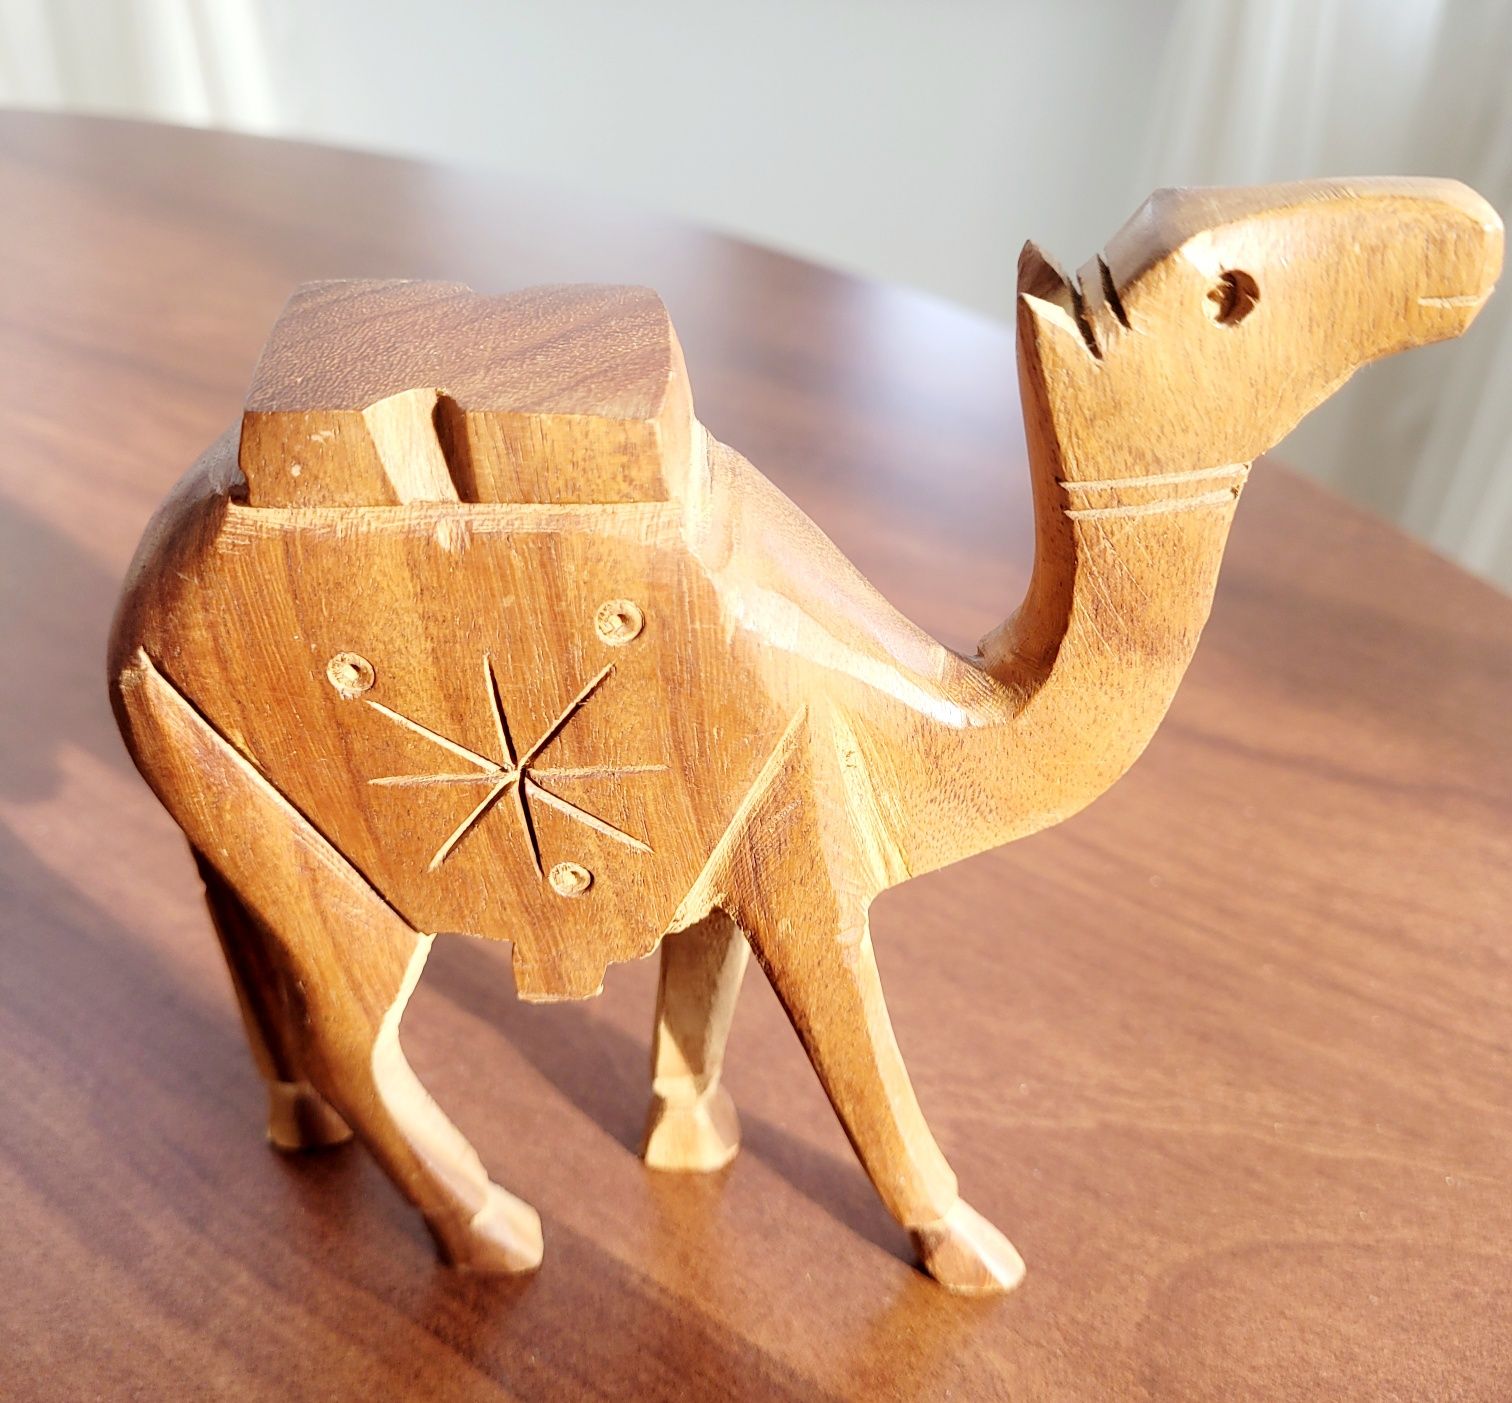 Drewniana figurka wielbłąda.